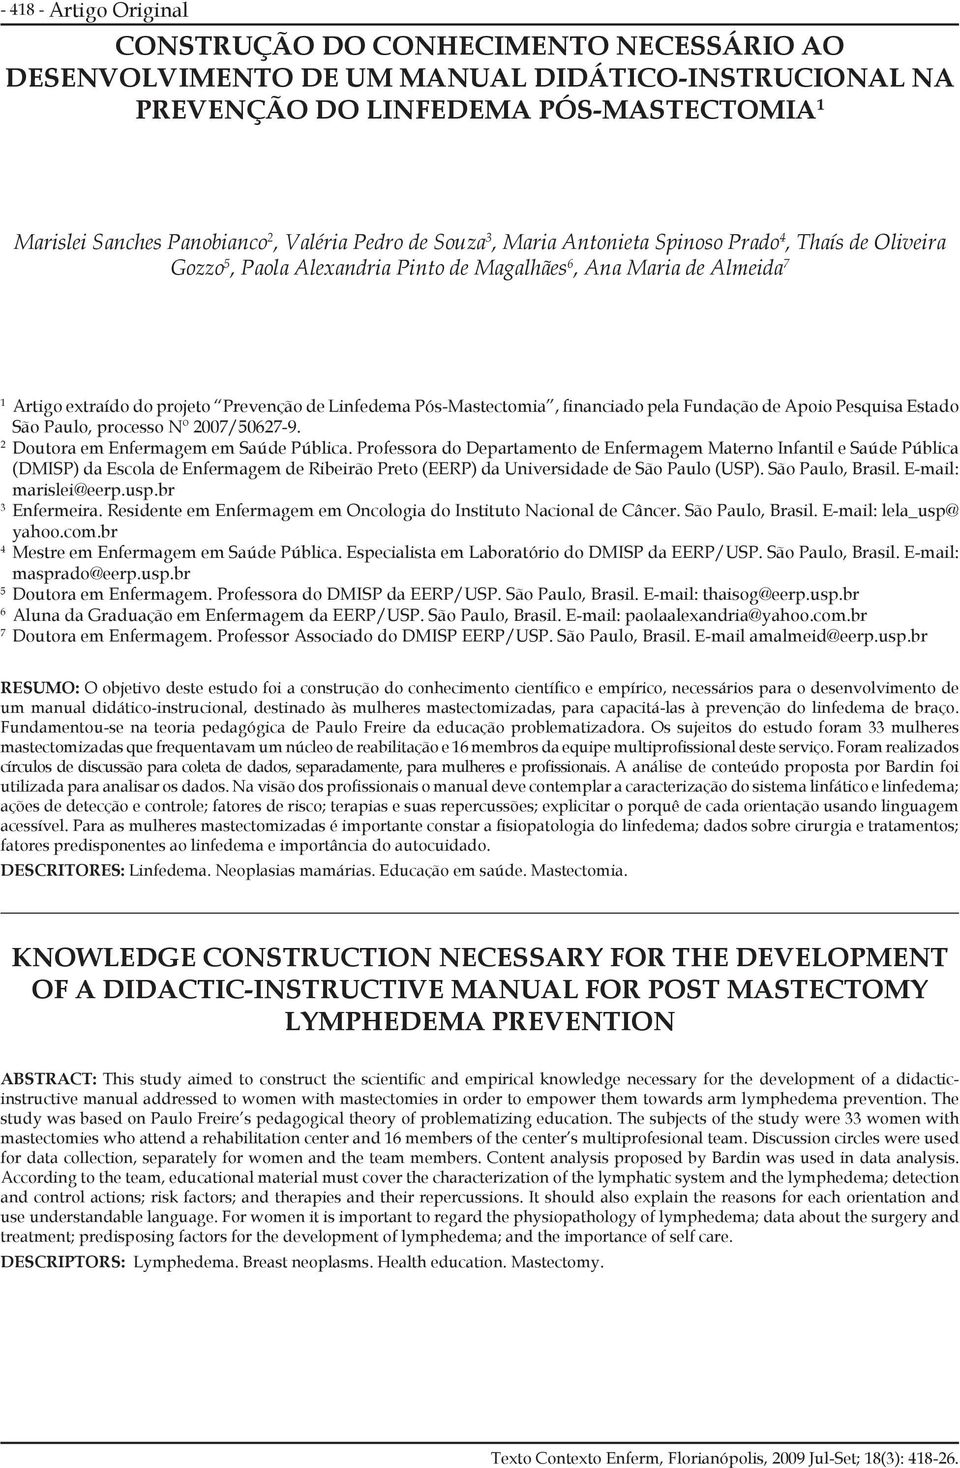 Pós-Mastectomia, financiado pela Fundação de Apoio Pesquisa Estado São Paulo, processo Nº 2007/50627-9. 2 Doutora em Enfermagem em Saúde Pública.